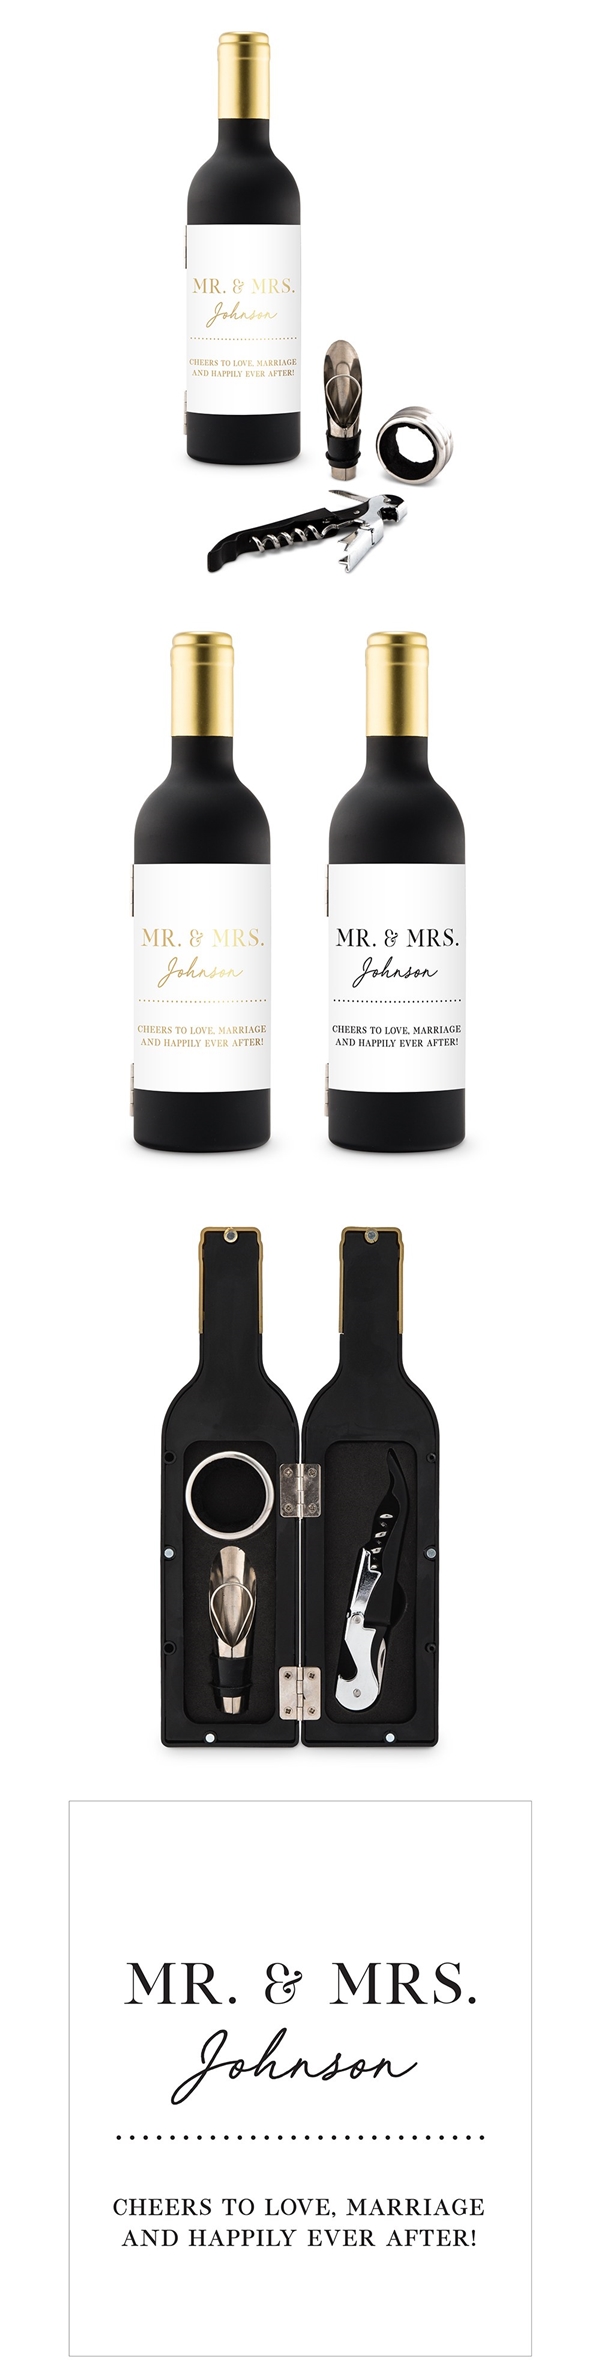 Wine Bottle-Shaped Corkscrew Gift Set with Mr & Mrs Design Label